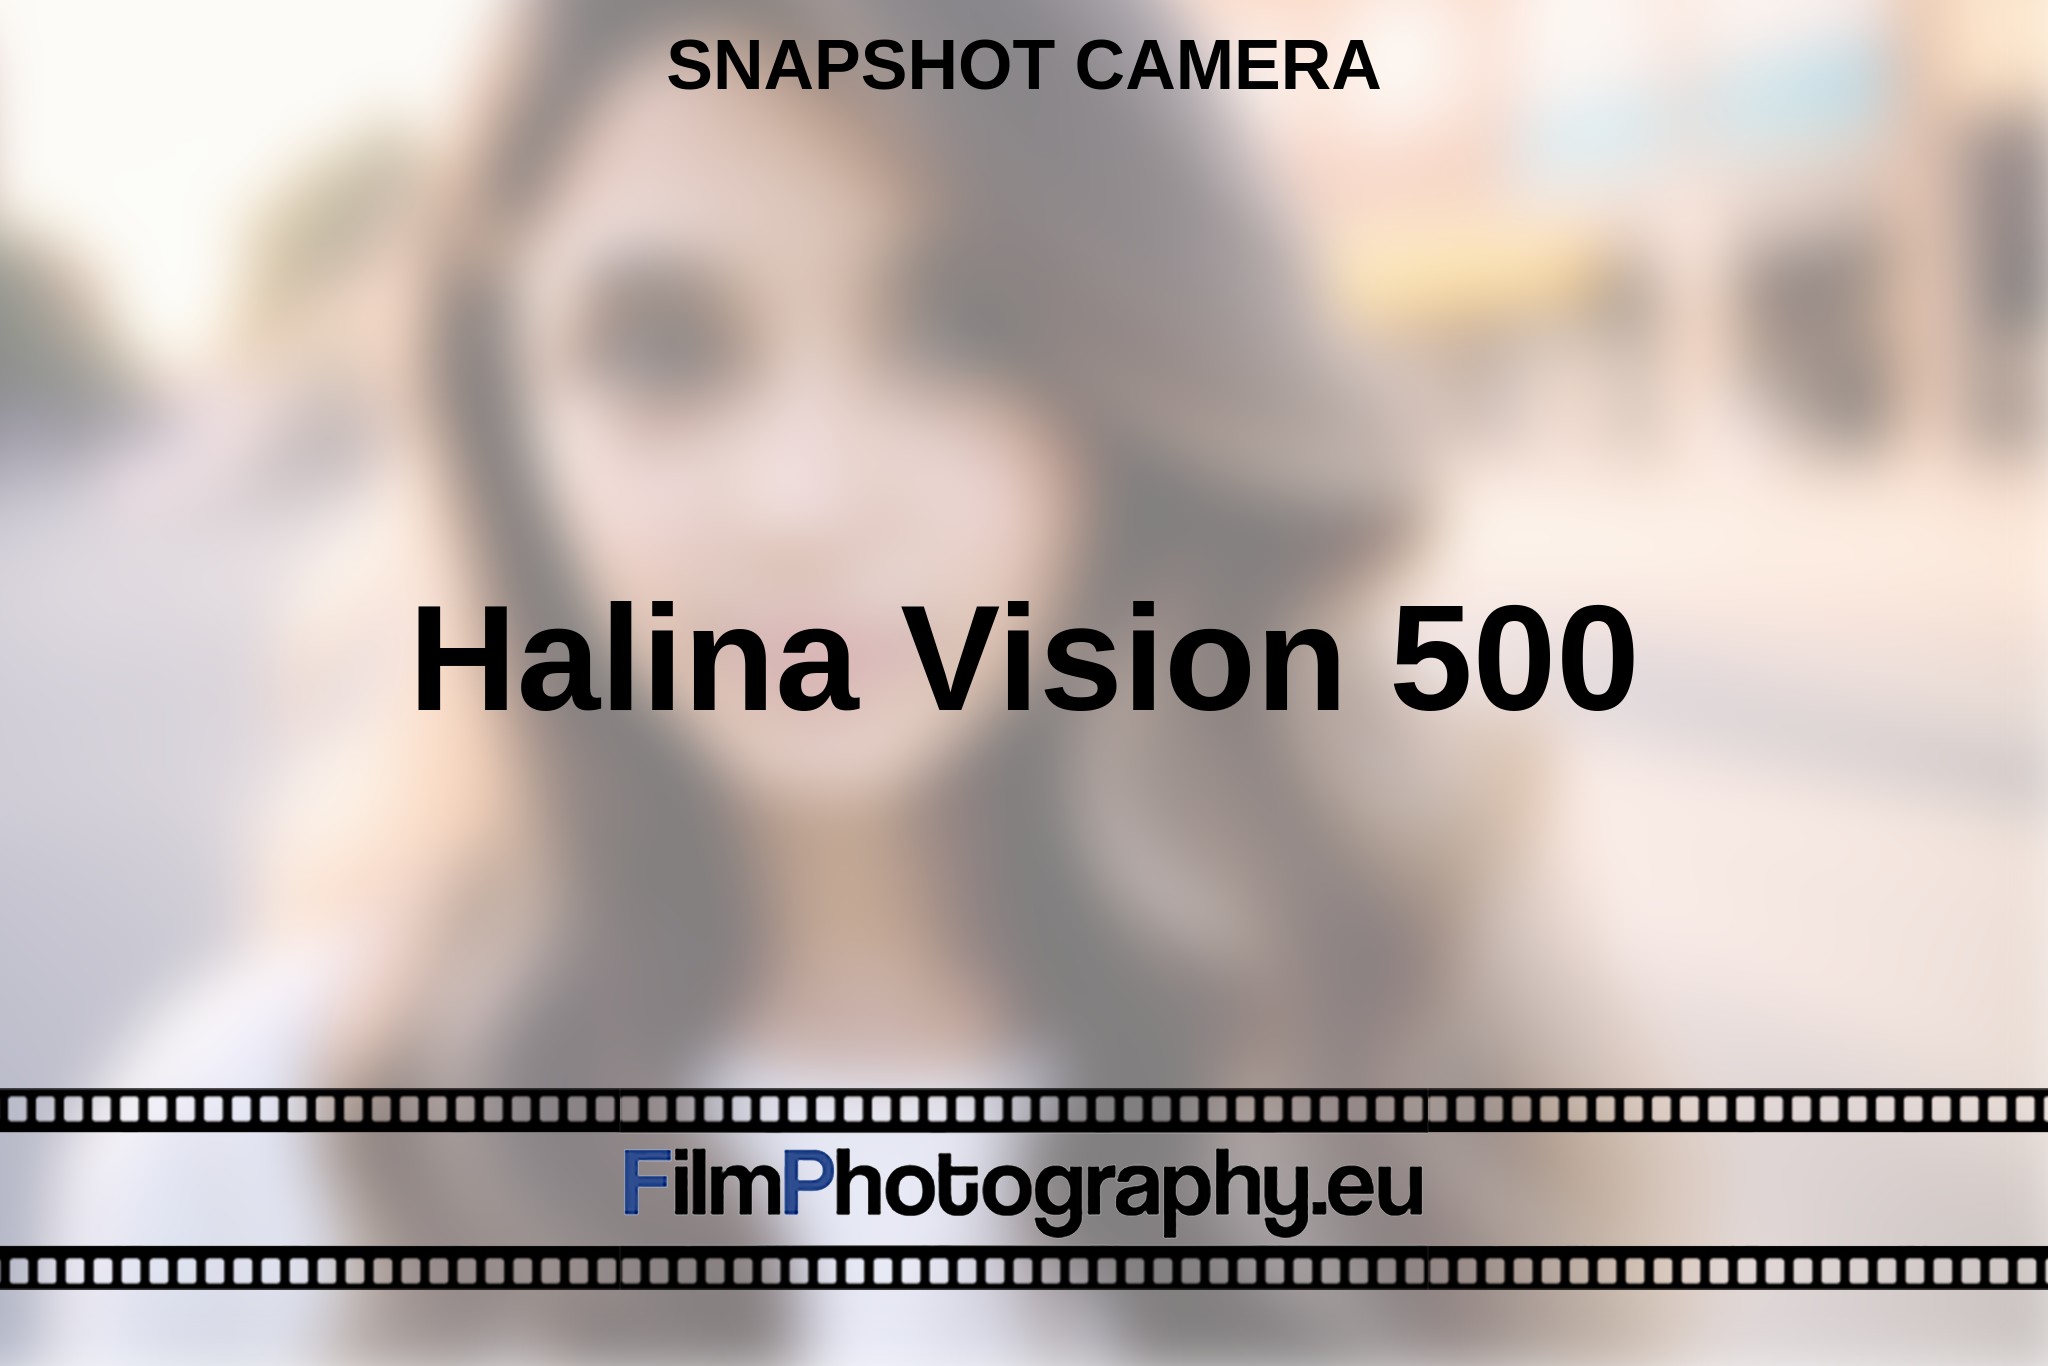 halina-vision-500-snapshot-camera-en-bnv.jpg